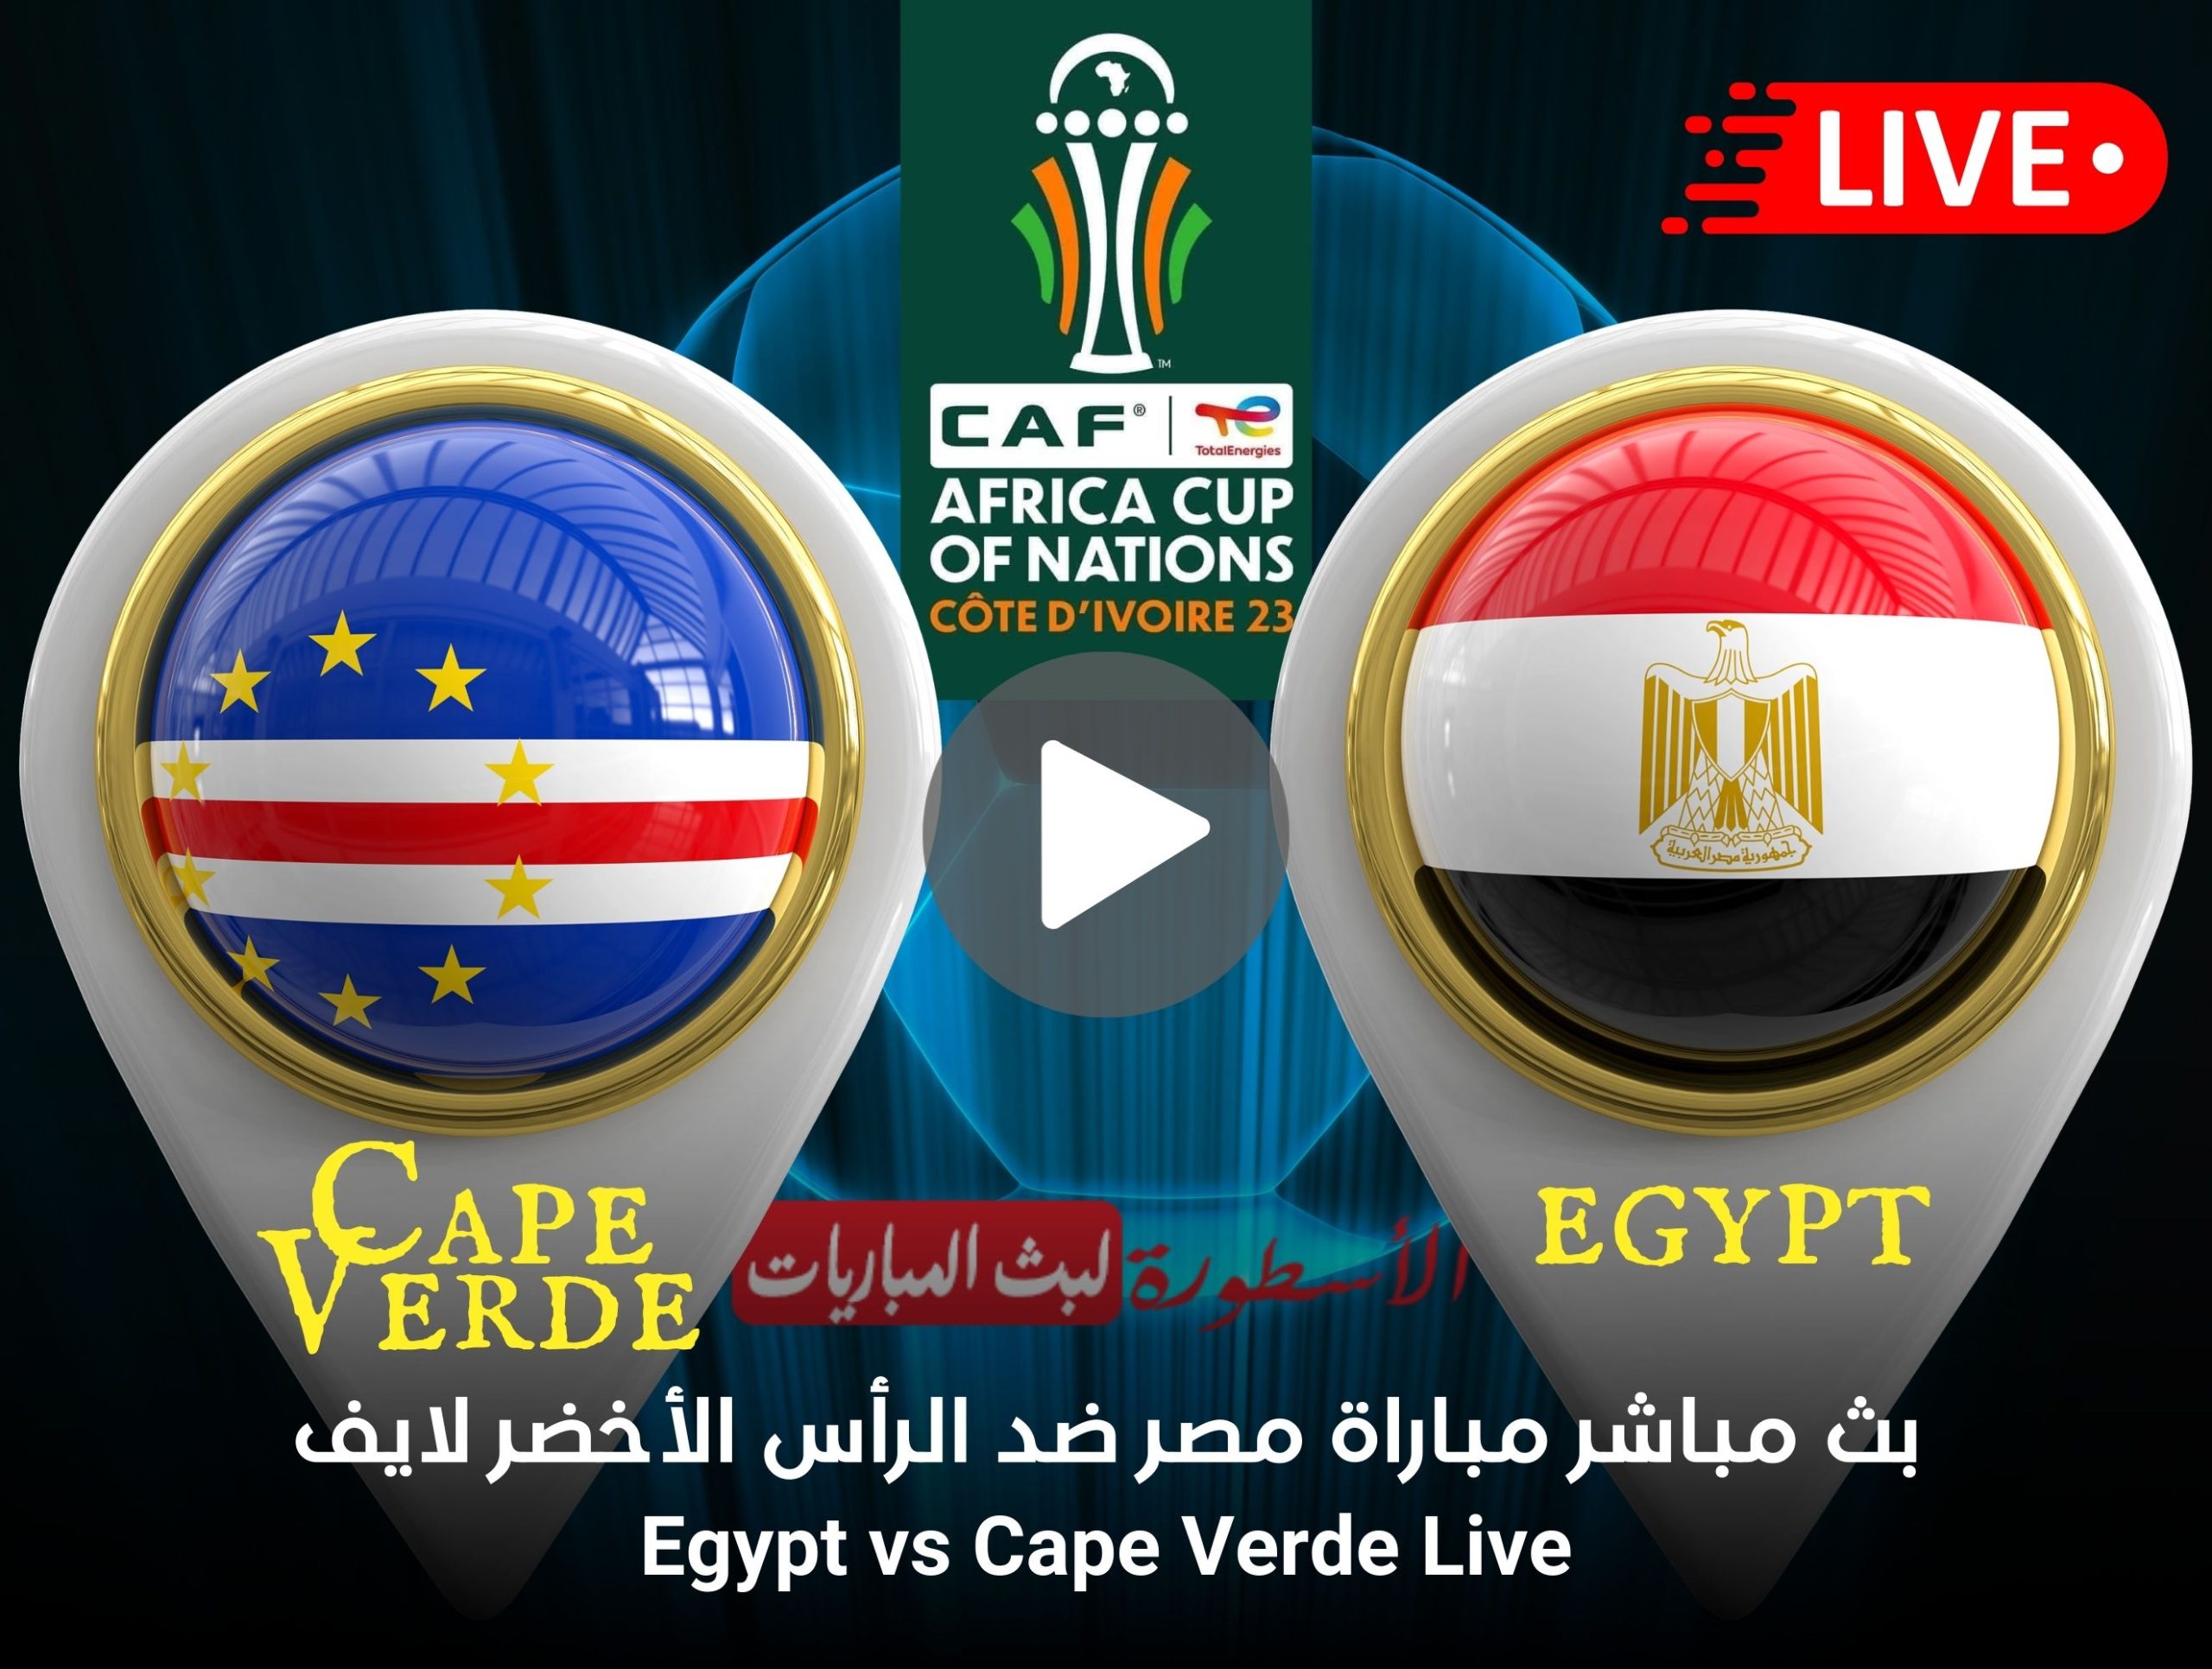 صورة مشاهدة مباراة مصر والراس الاخضر ياسين تيفي بث مباشر في كاس افريقيا Egypt vs Cape Verde Yacine tv